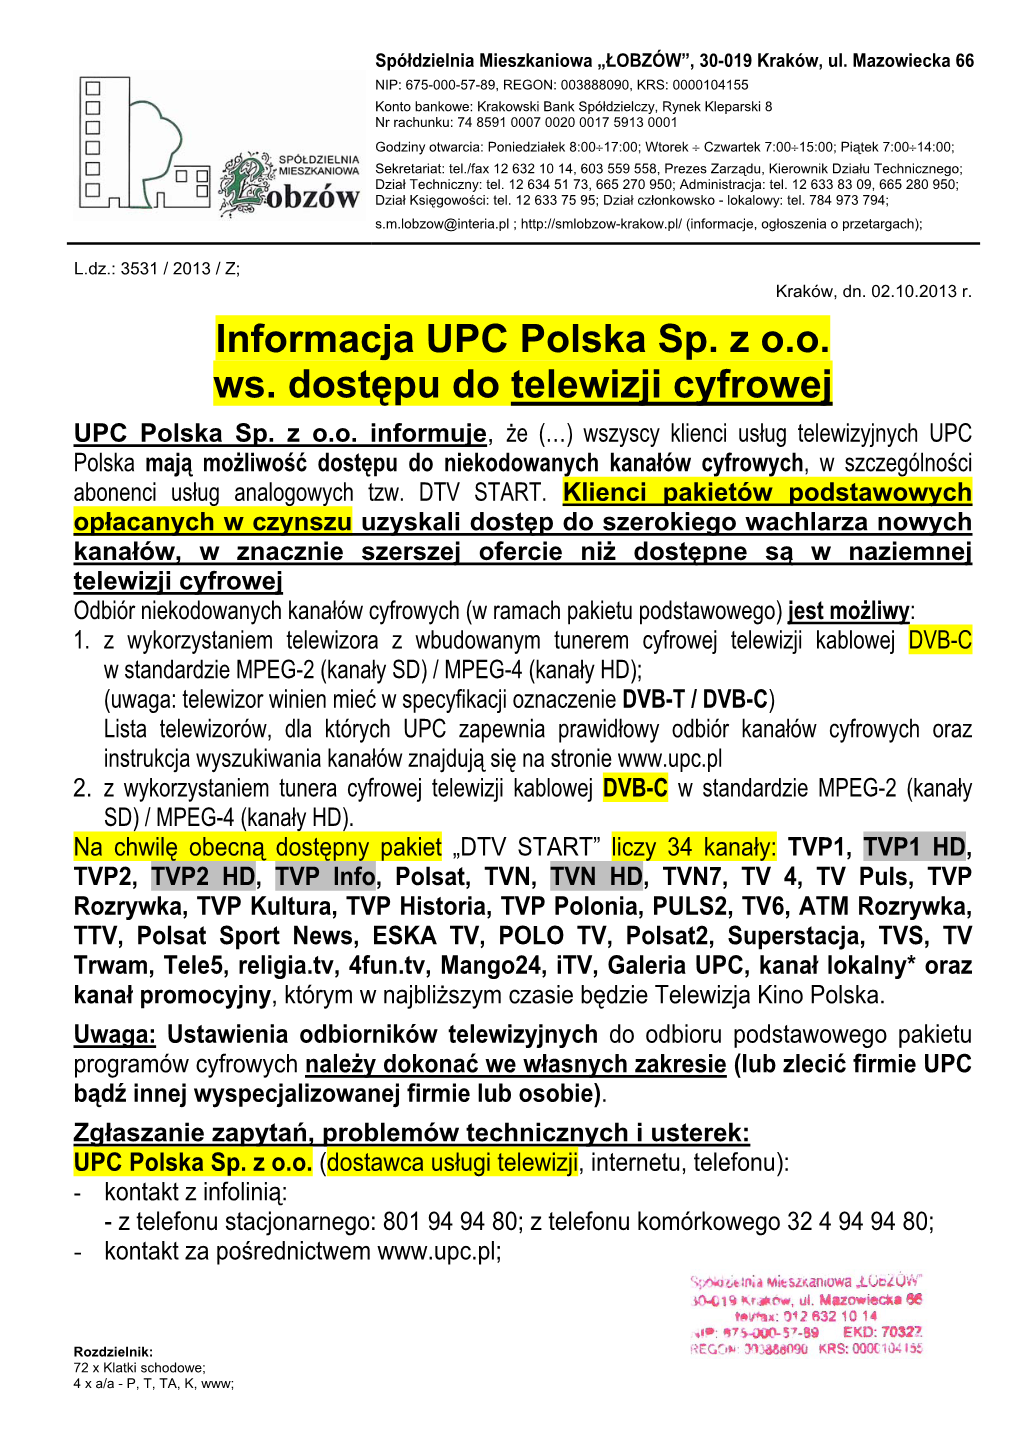 Informacja UPC Polska Sp. Z O.O. Ws. Dostępu Do Telewizji Cyfrowej